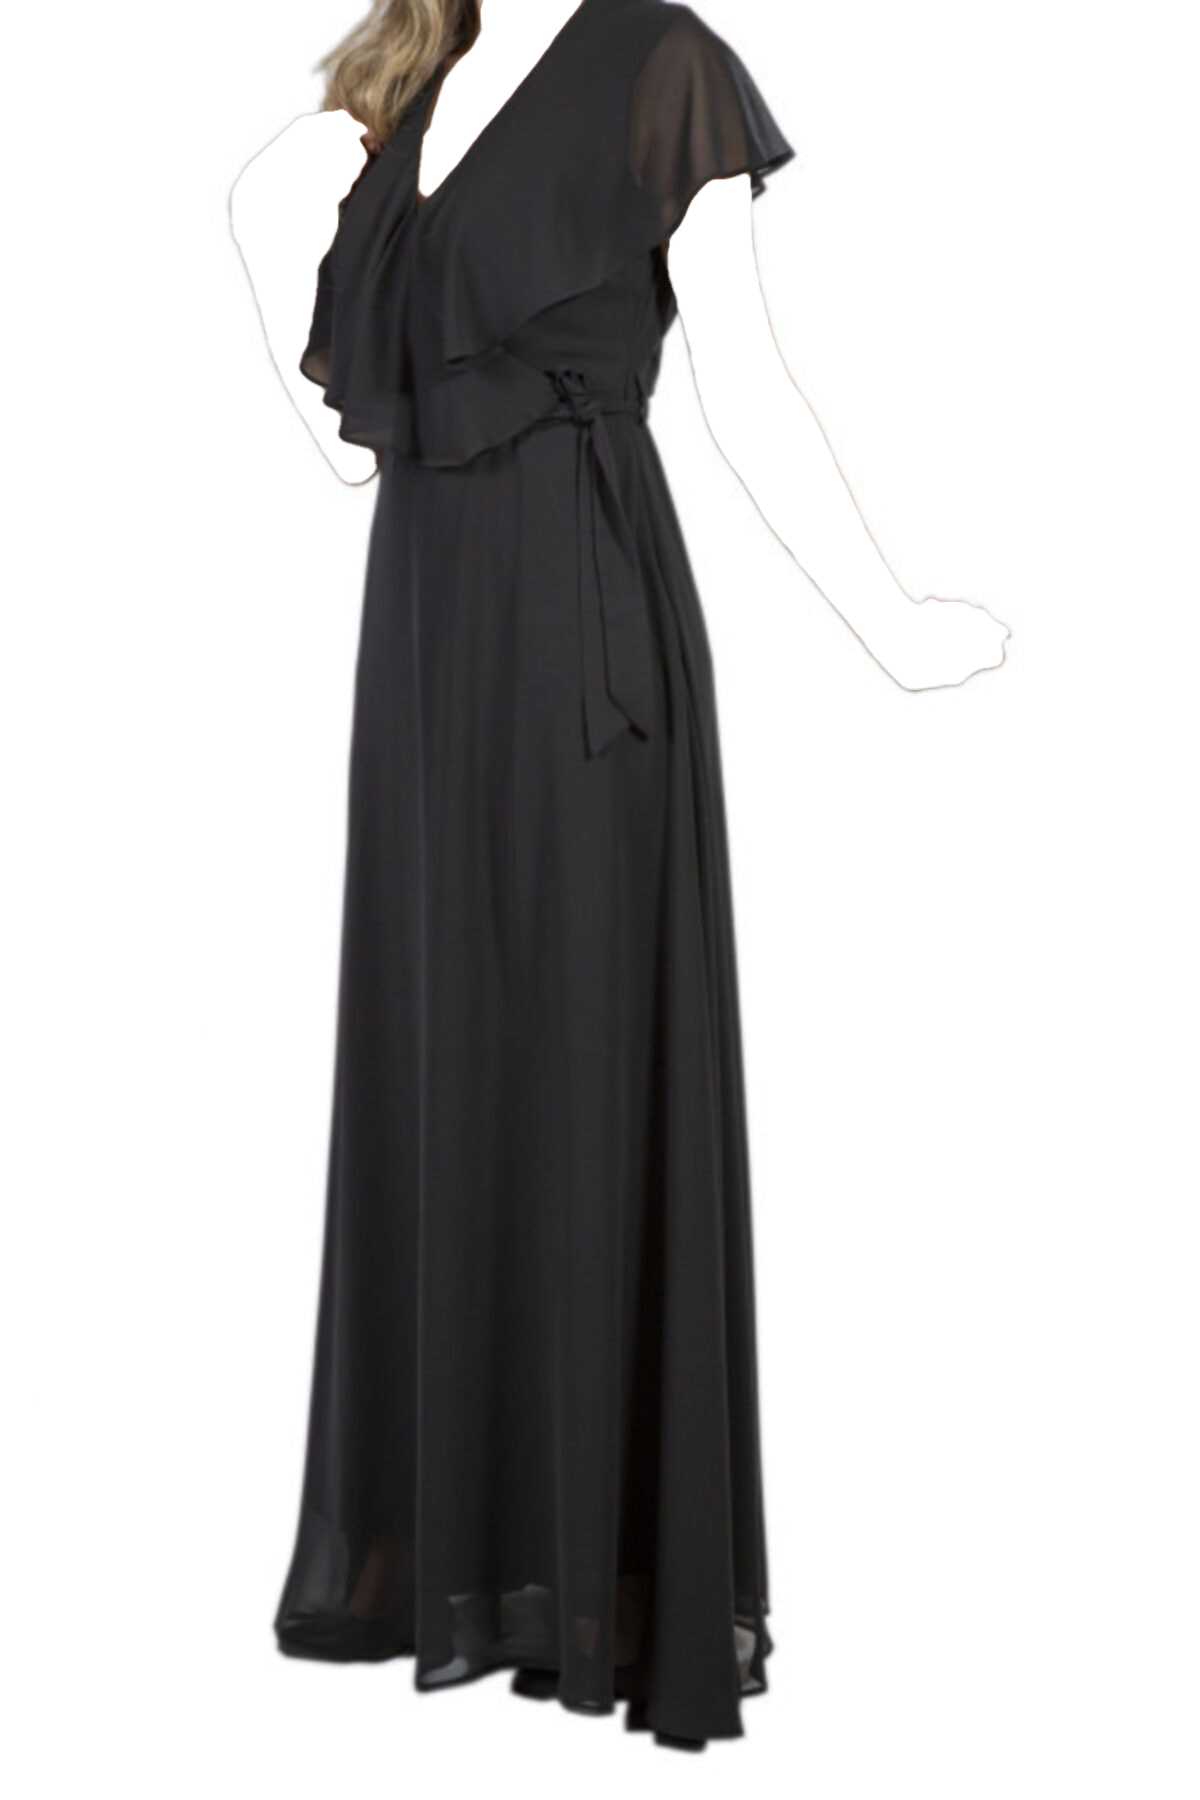 ژورنال لباس مجلسی زنانه برند Moda Çizgi رنگ مشکی کد ty52586147